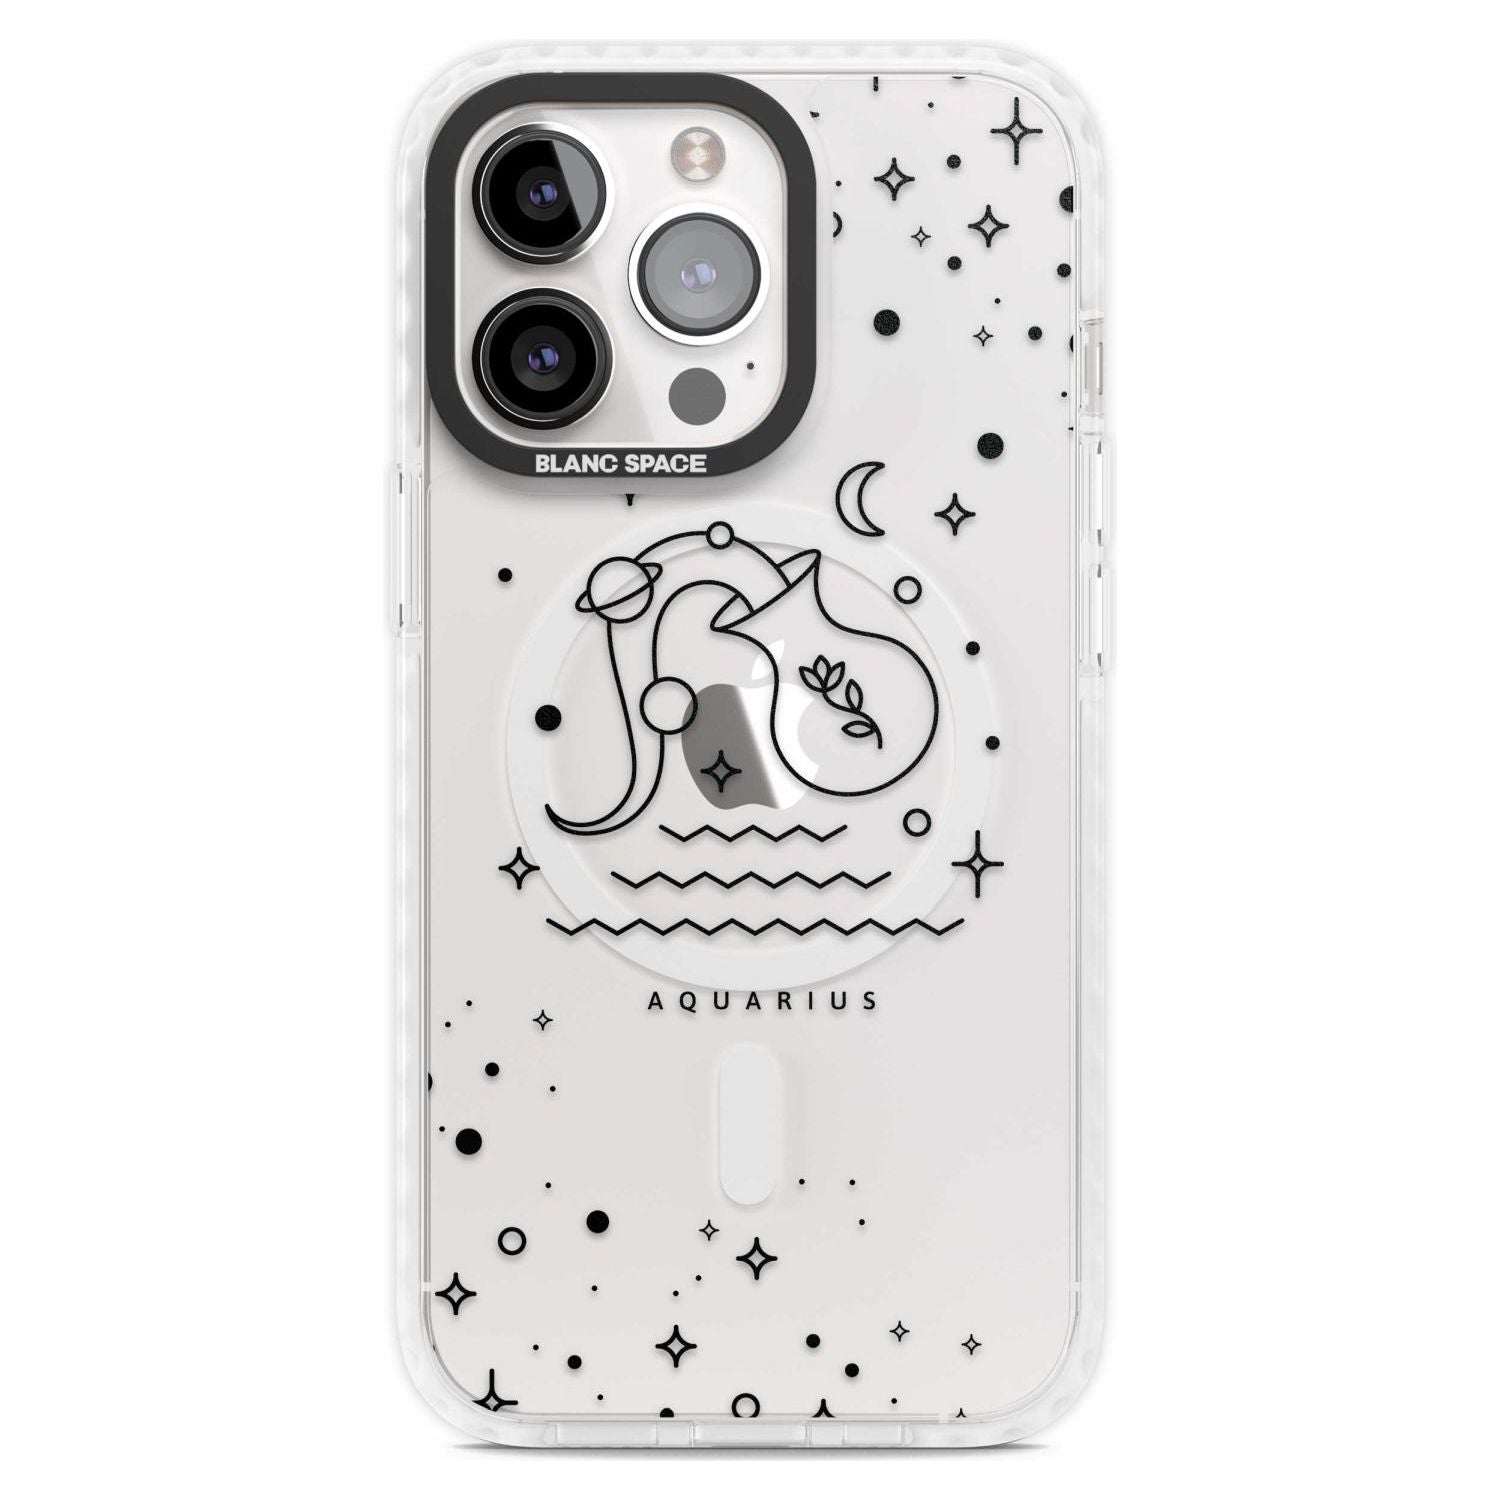 Aquarius Emblem - Transparent Design Phone Case iPhone 15 Pro Max / Magsafe Impact Case,iPhone 15 Pro / Magsafe Impact Case Blanc Space